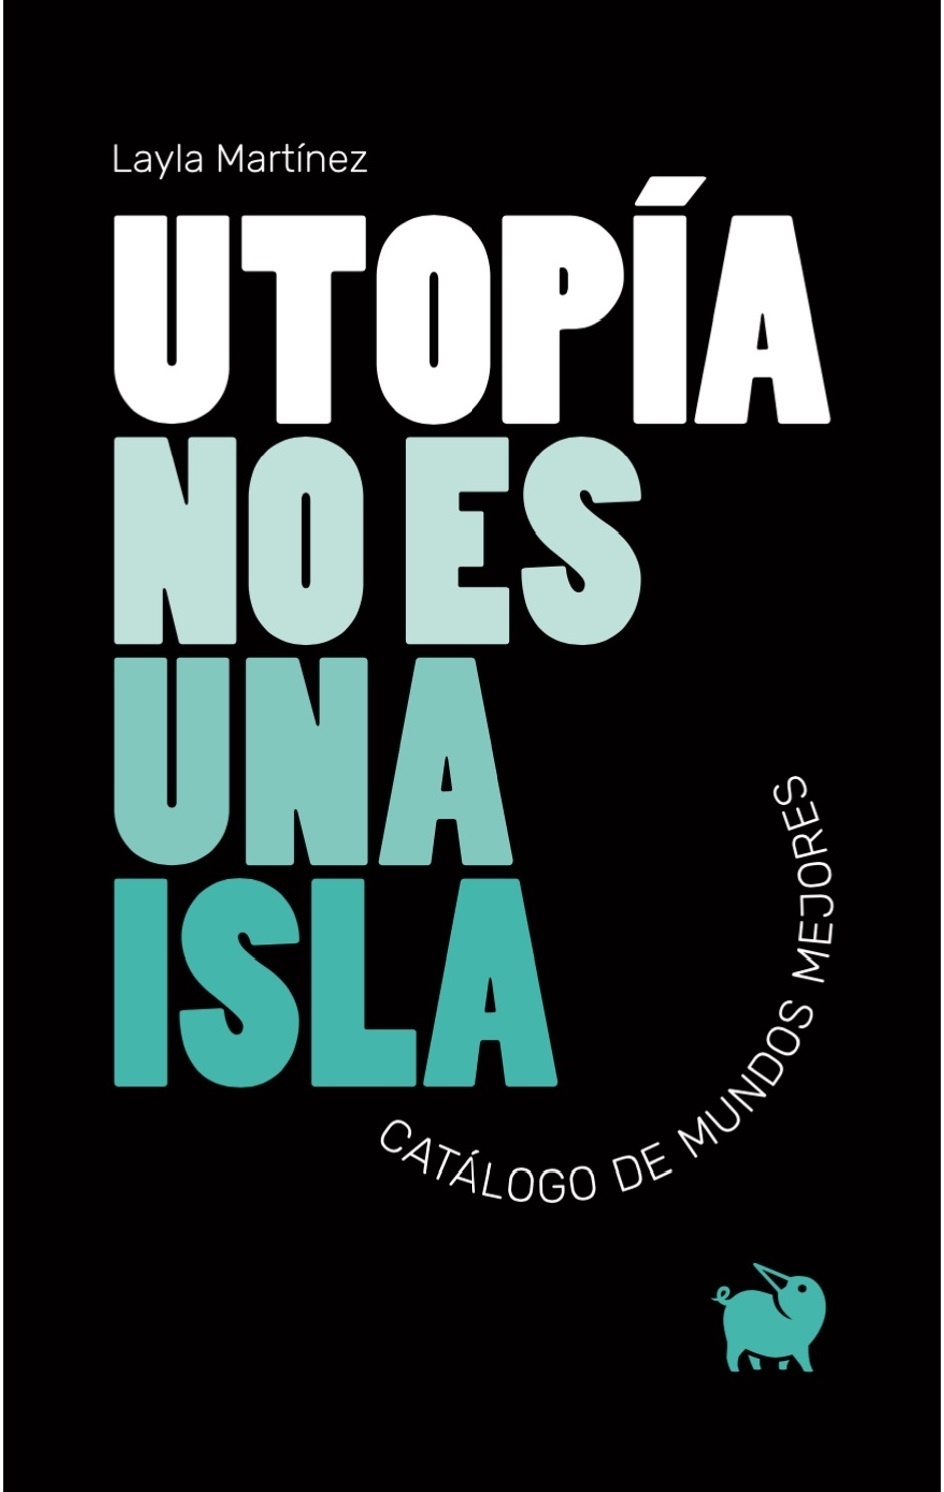 Utopía no es una isla "Catálogo de mundos mejores". 